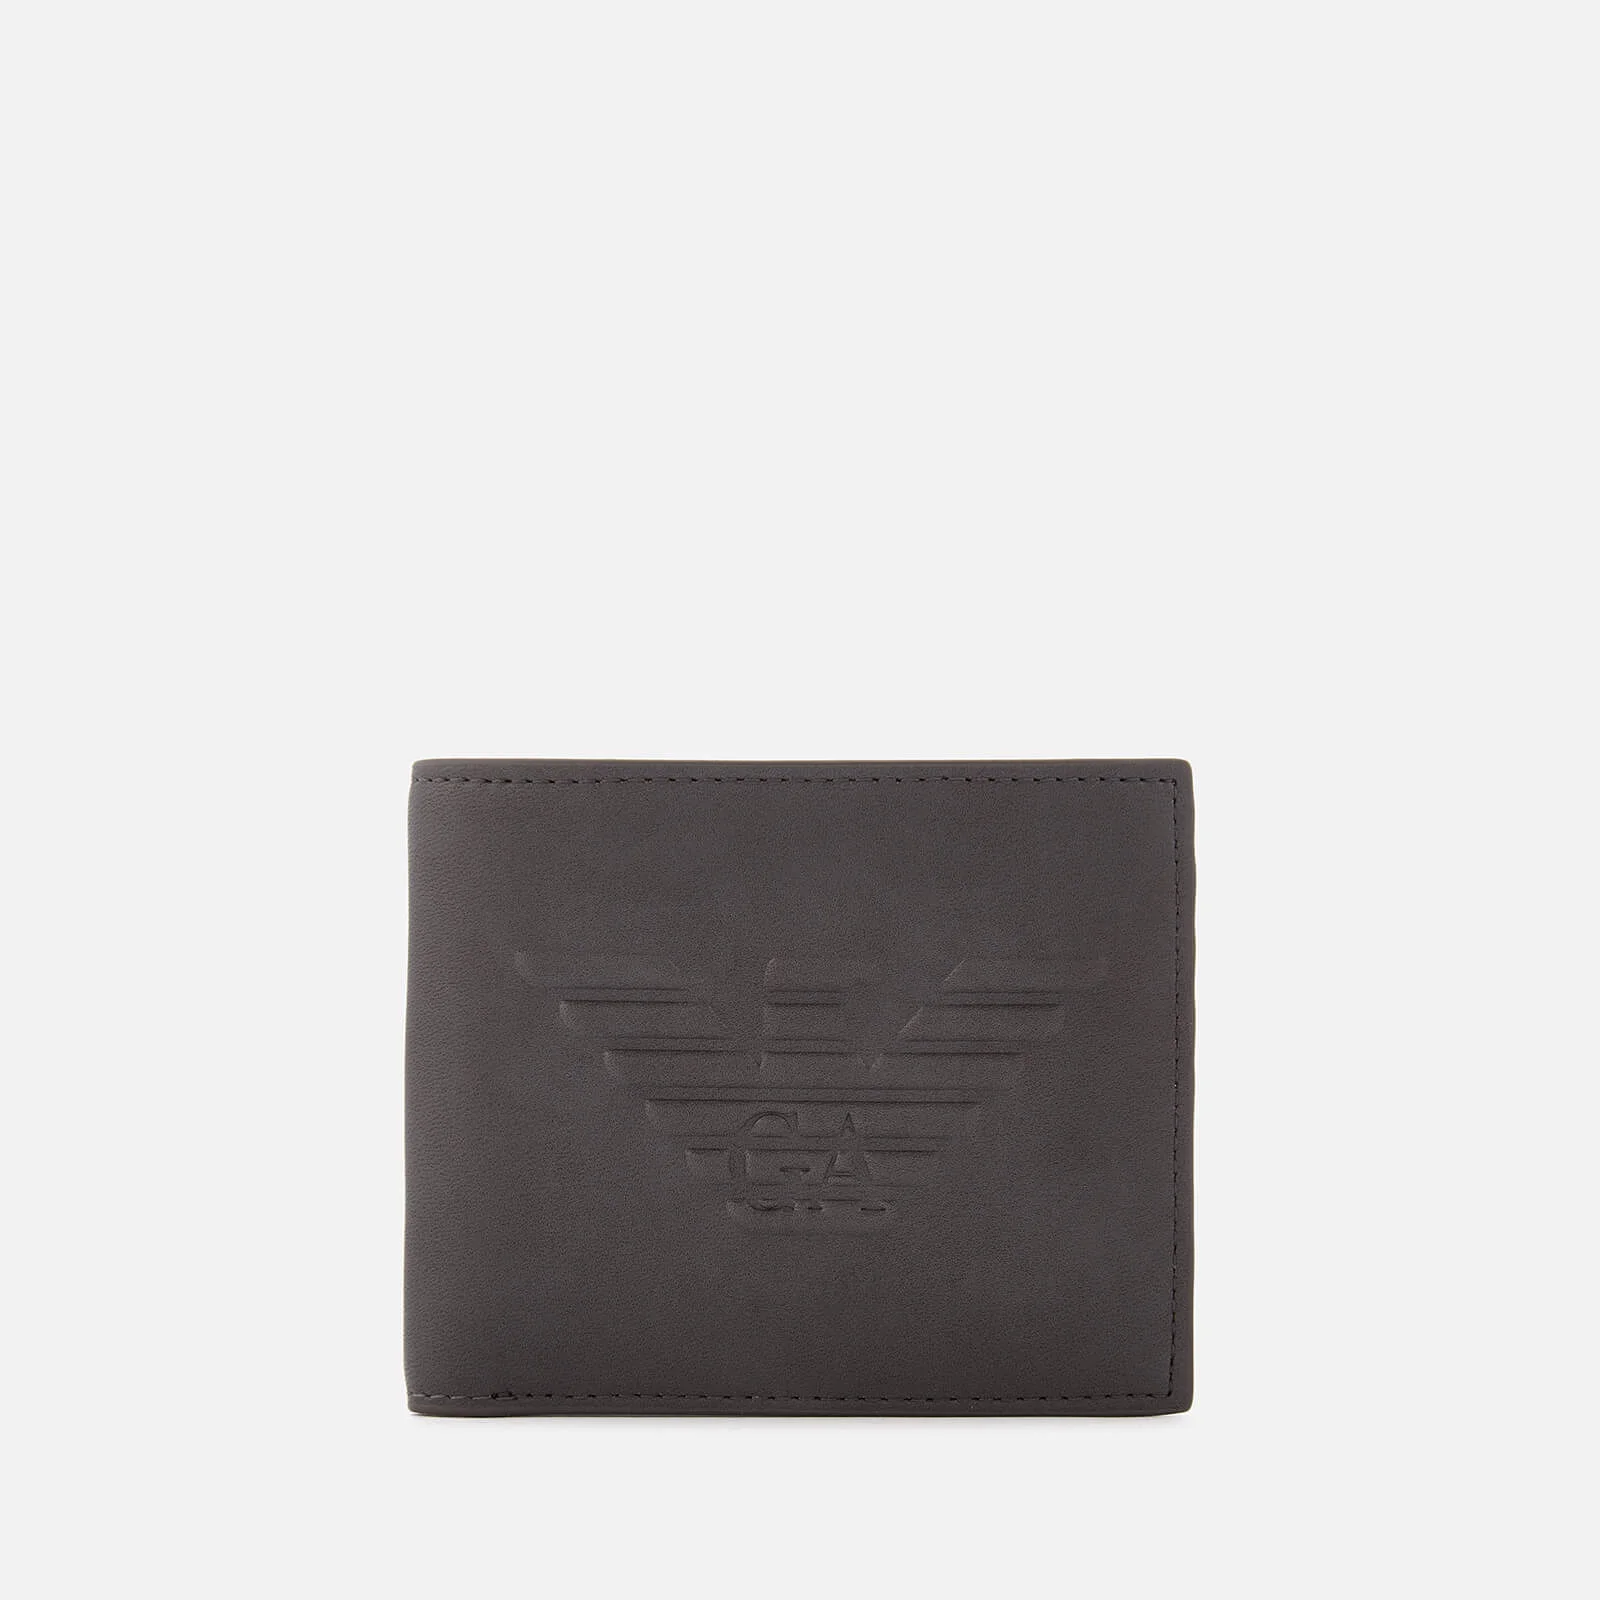 Emporio Armani Men's Small Bi-Fold Wallet - Grey Image 1